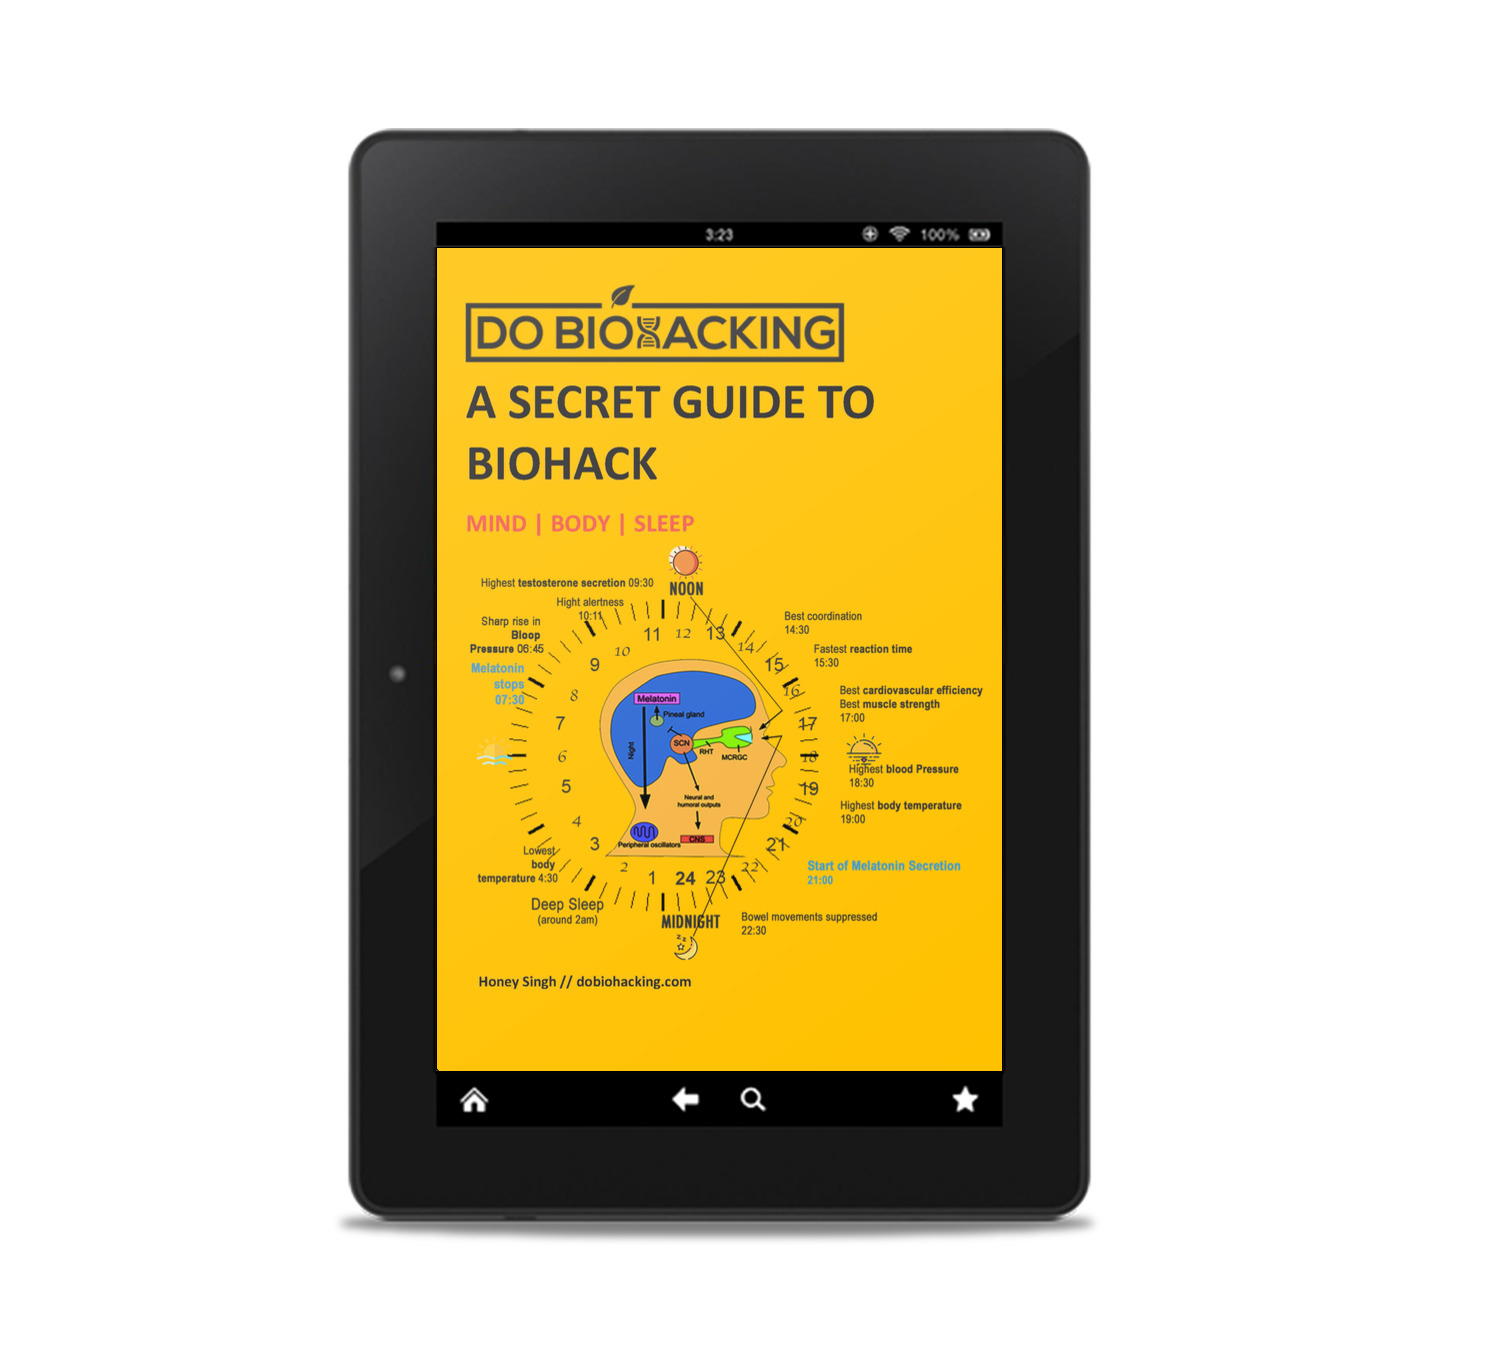 Biohacking Secrets Book on Amazon Kindle